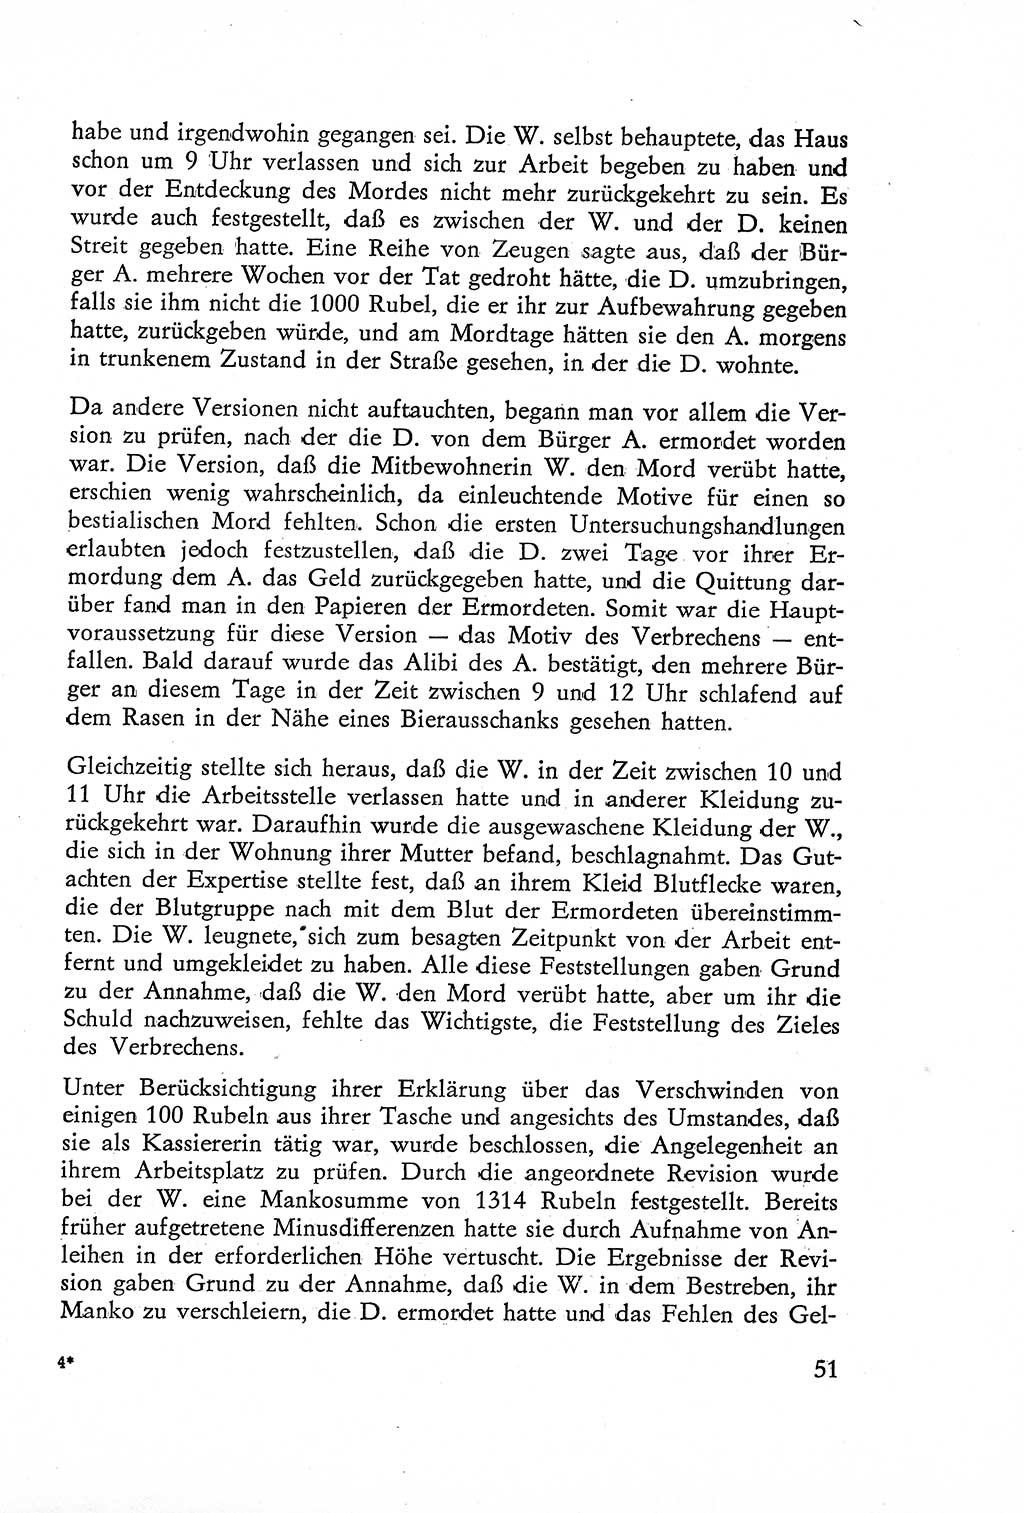 Die Untersuchung einzelner Verbrechensarten [Deutsche Demokratische Republik (DDR)] 1960, Seite 51 (Unters. Verbr.-Art. DDR 1960, S. 51)